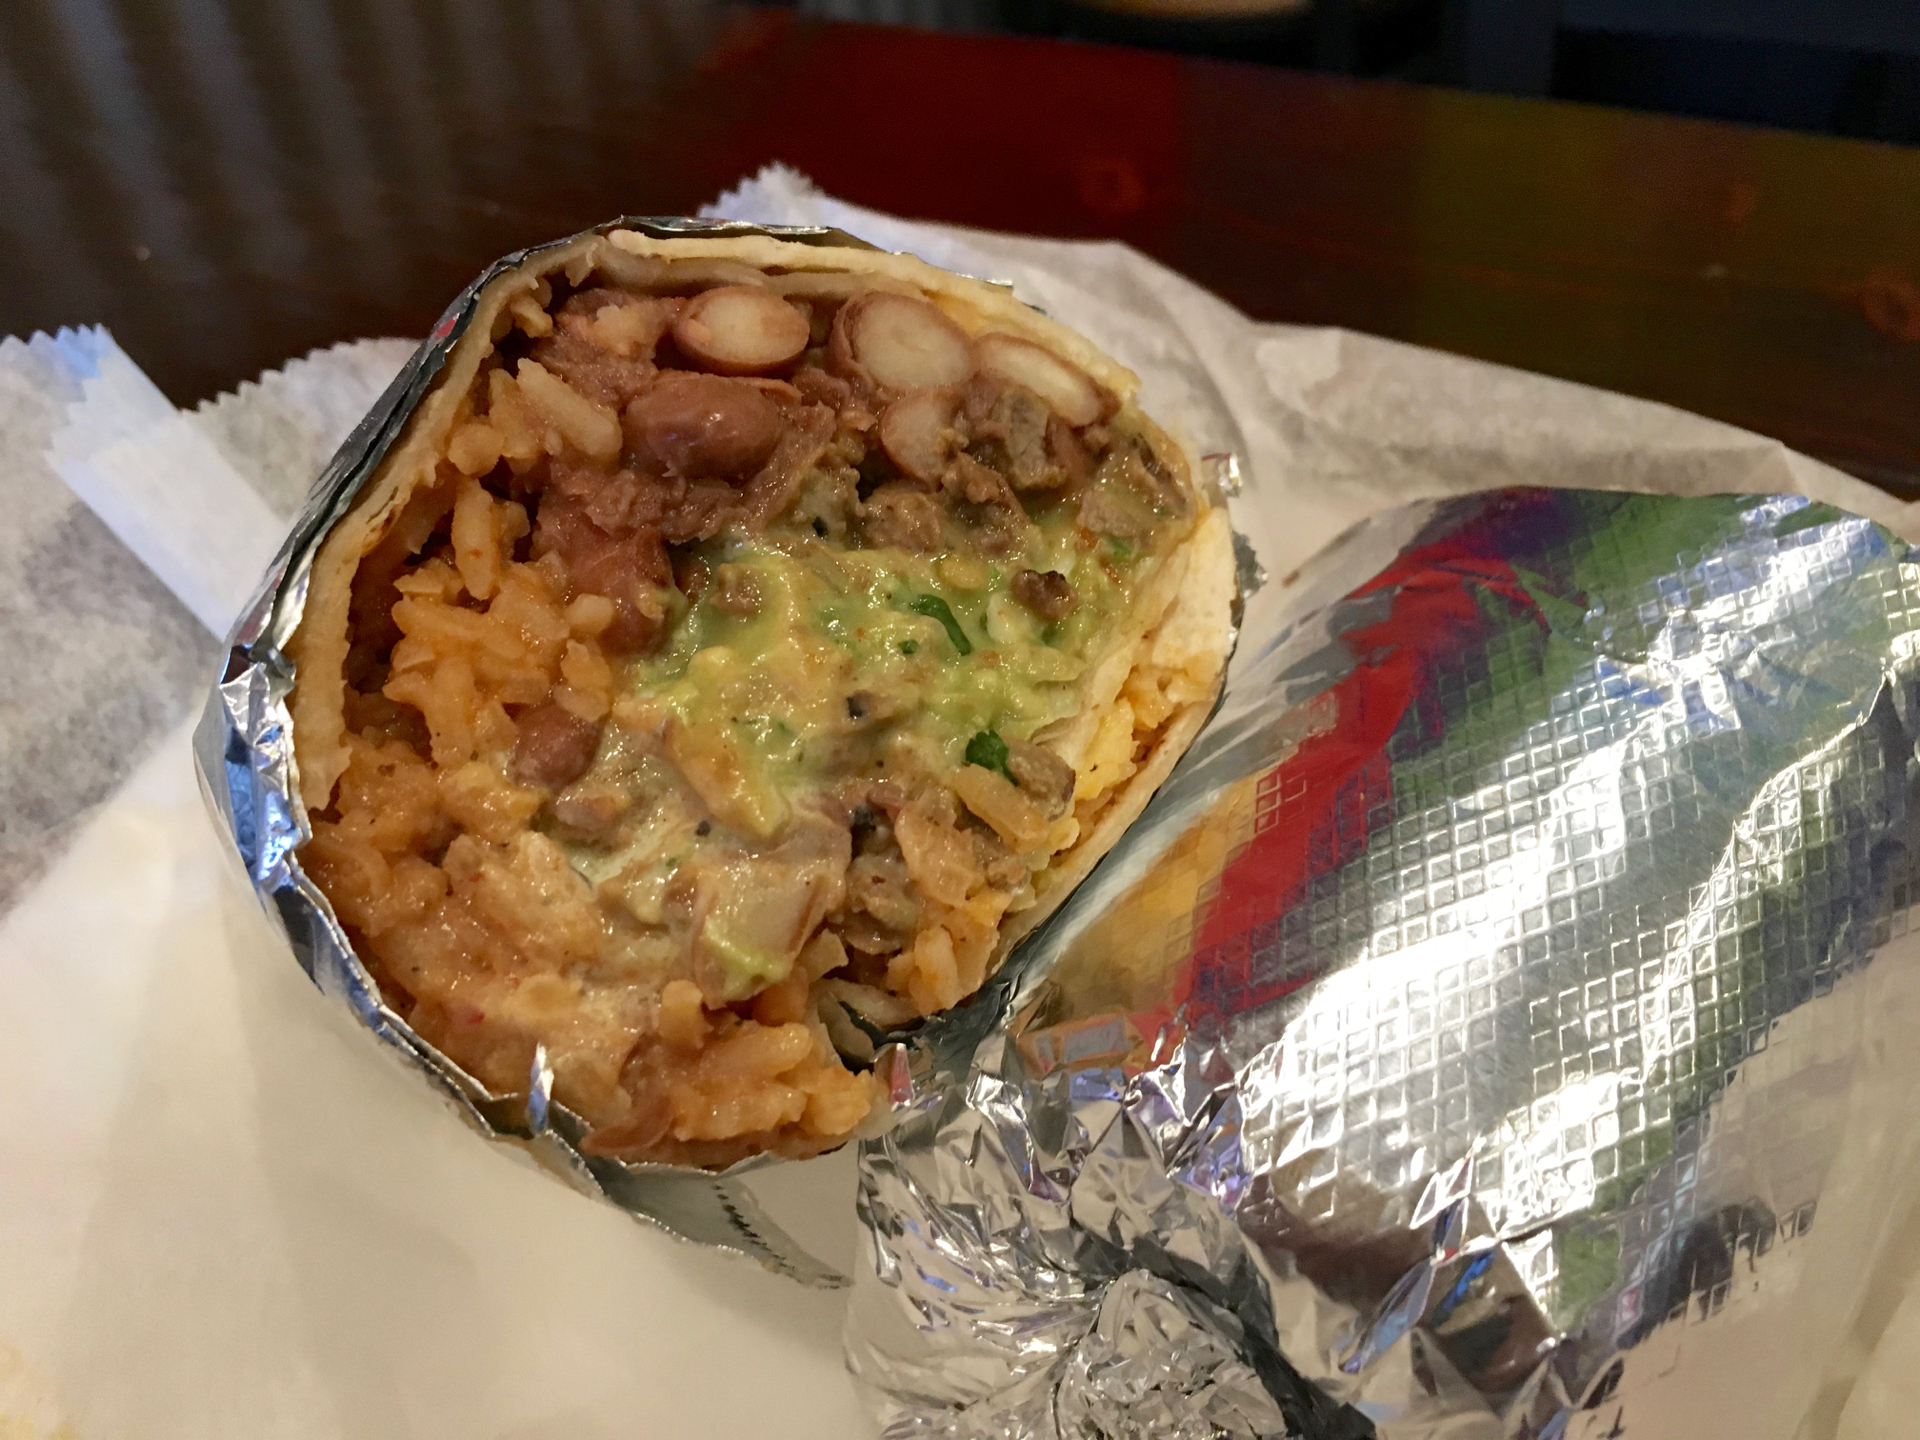 A super burrito with carne asada at Sancho’s Taqueria.